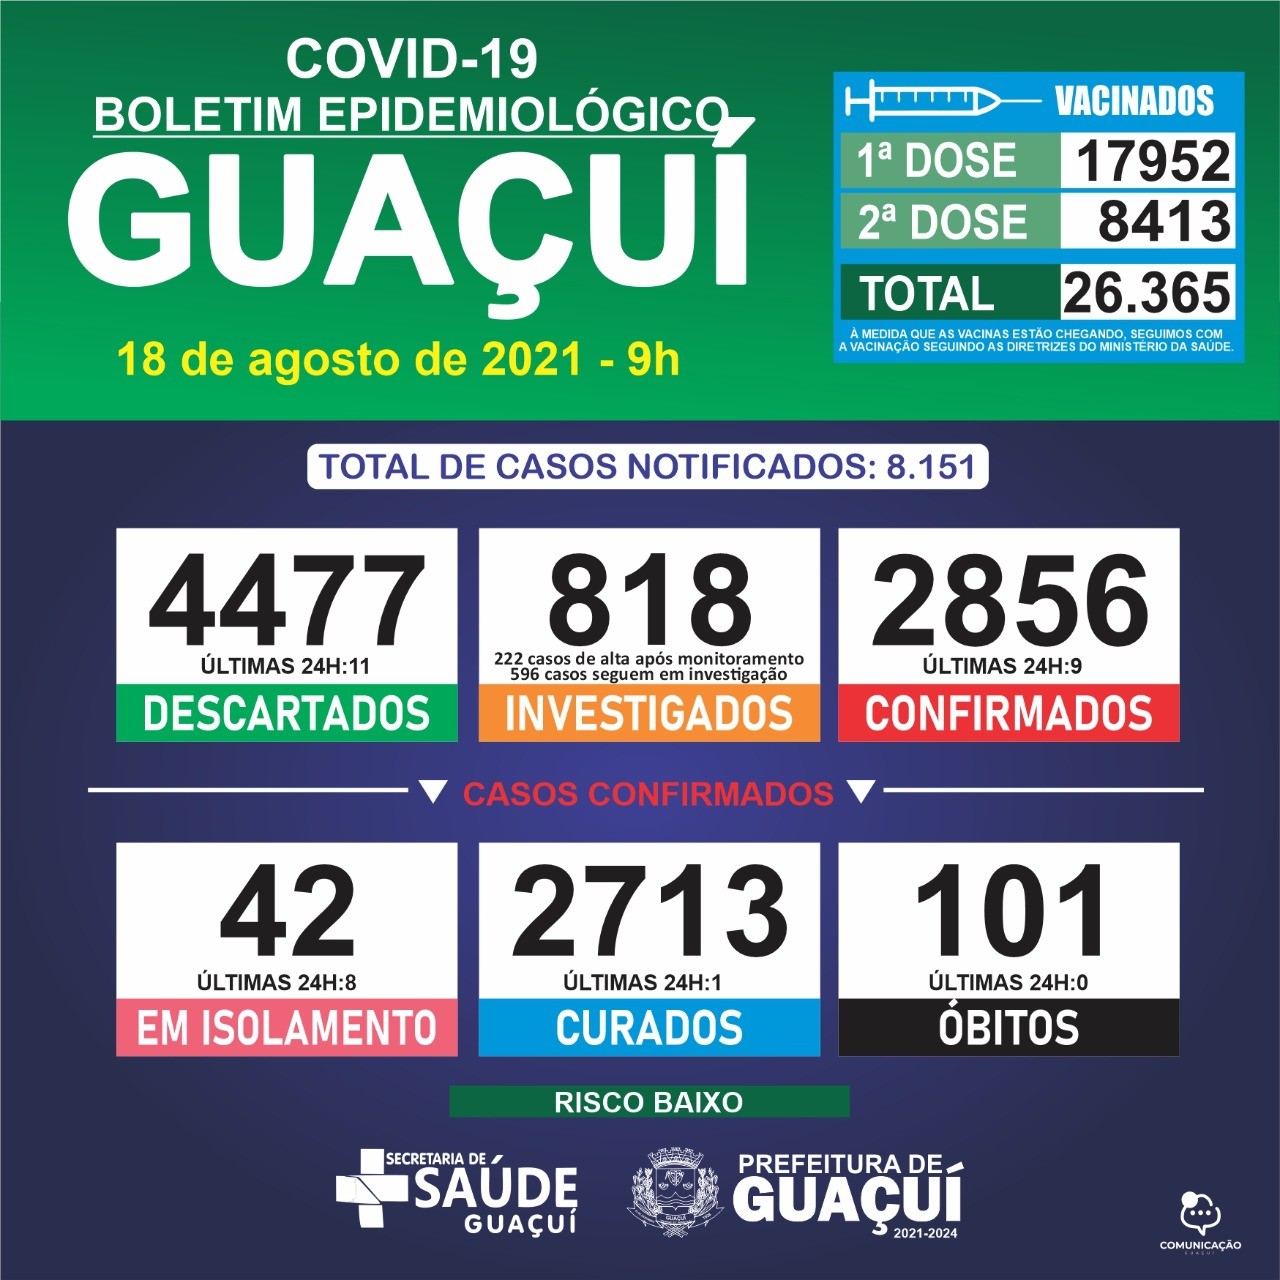 Boletim Epidemiológico 18/08/21: Guaçuí registra 9 casos confirmados e 1 curado nas últimas 24 horas